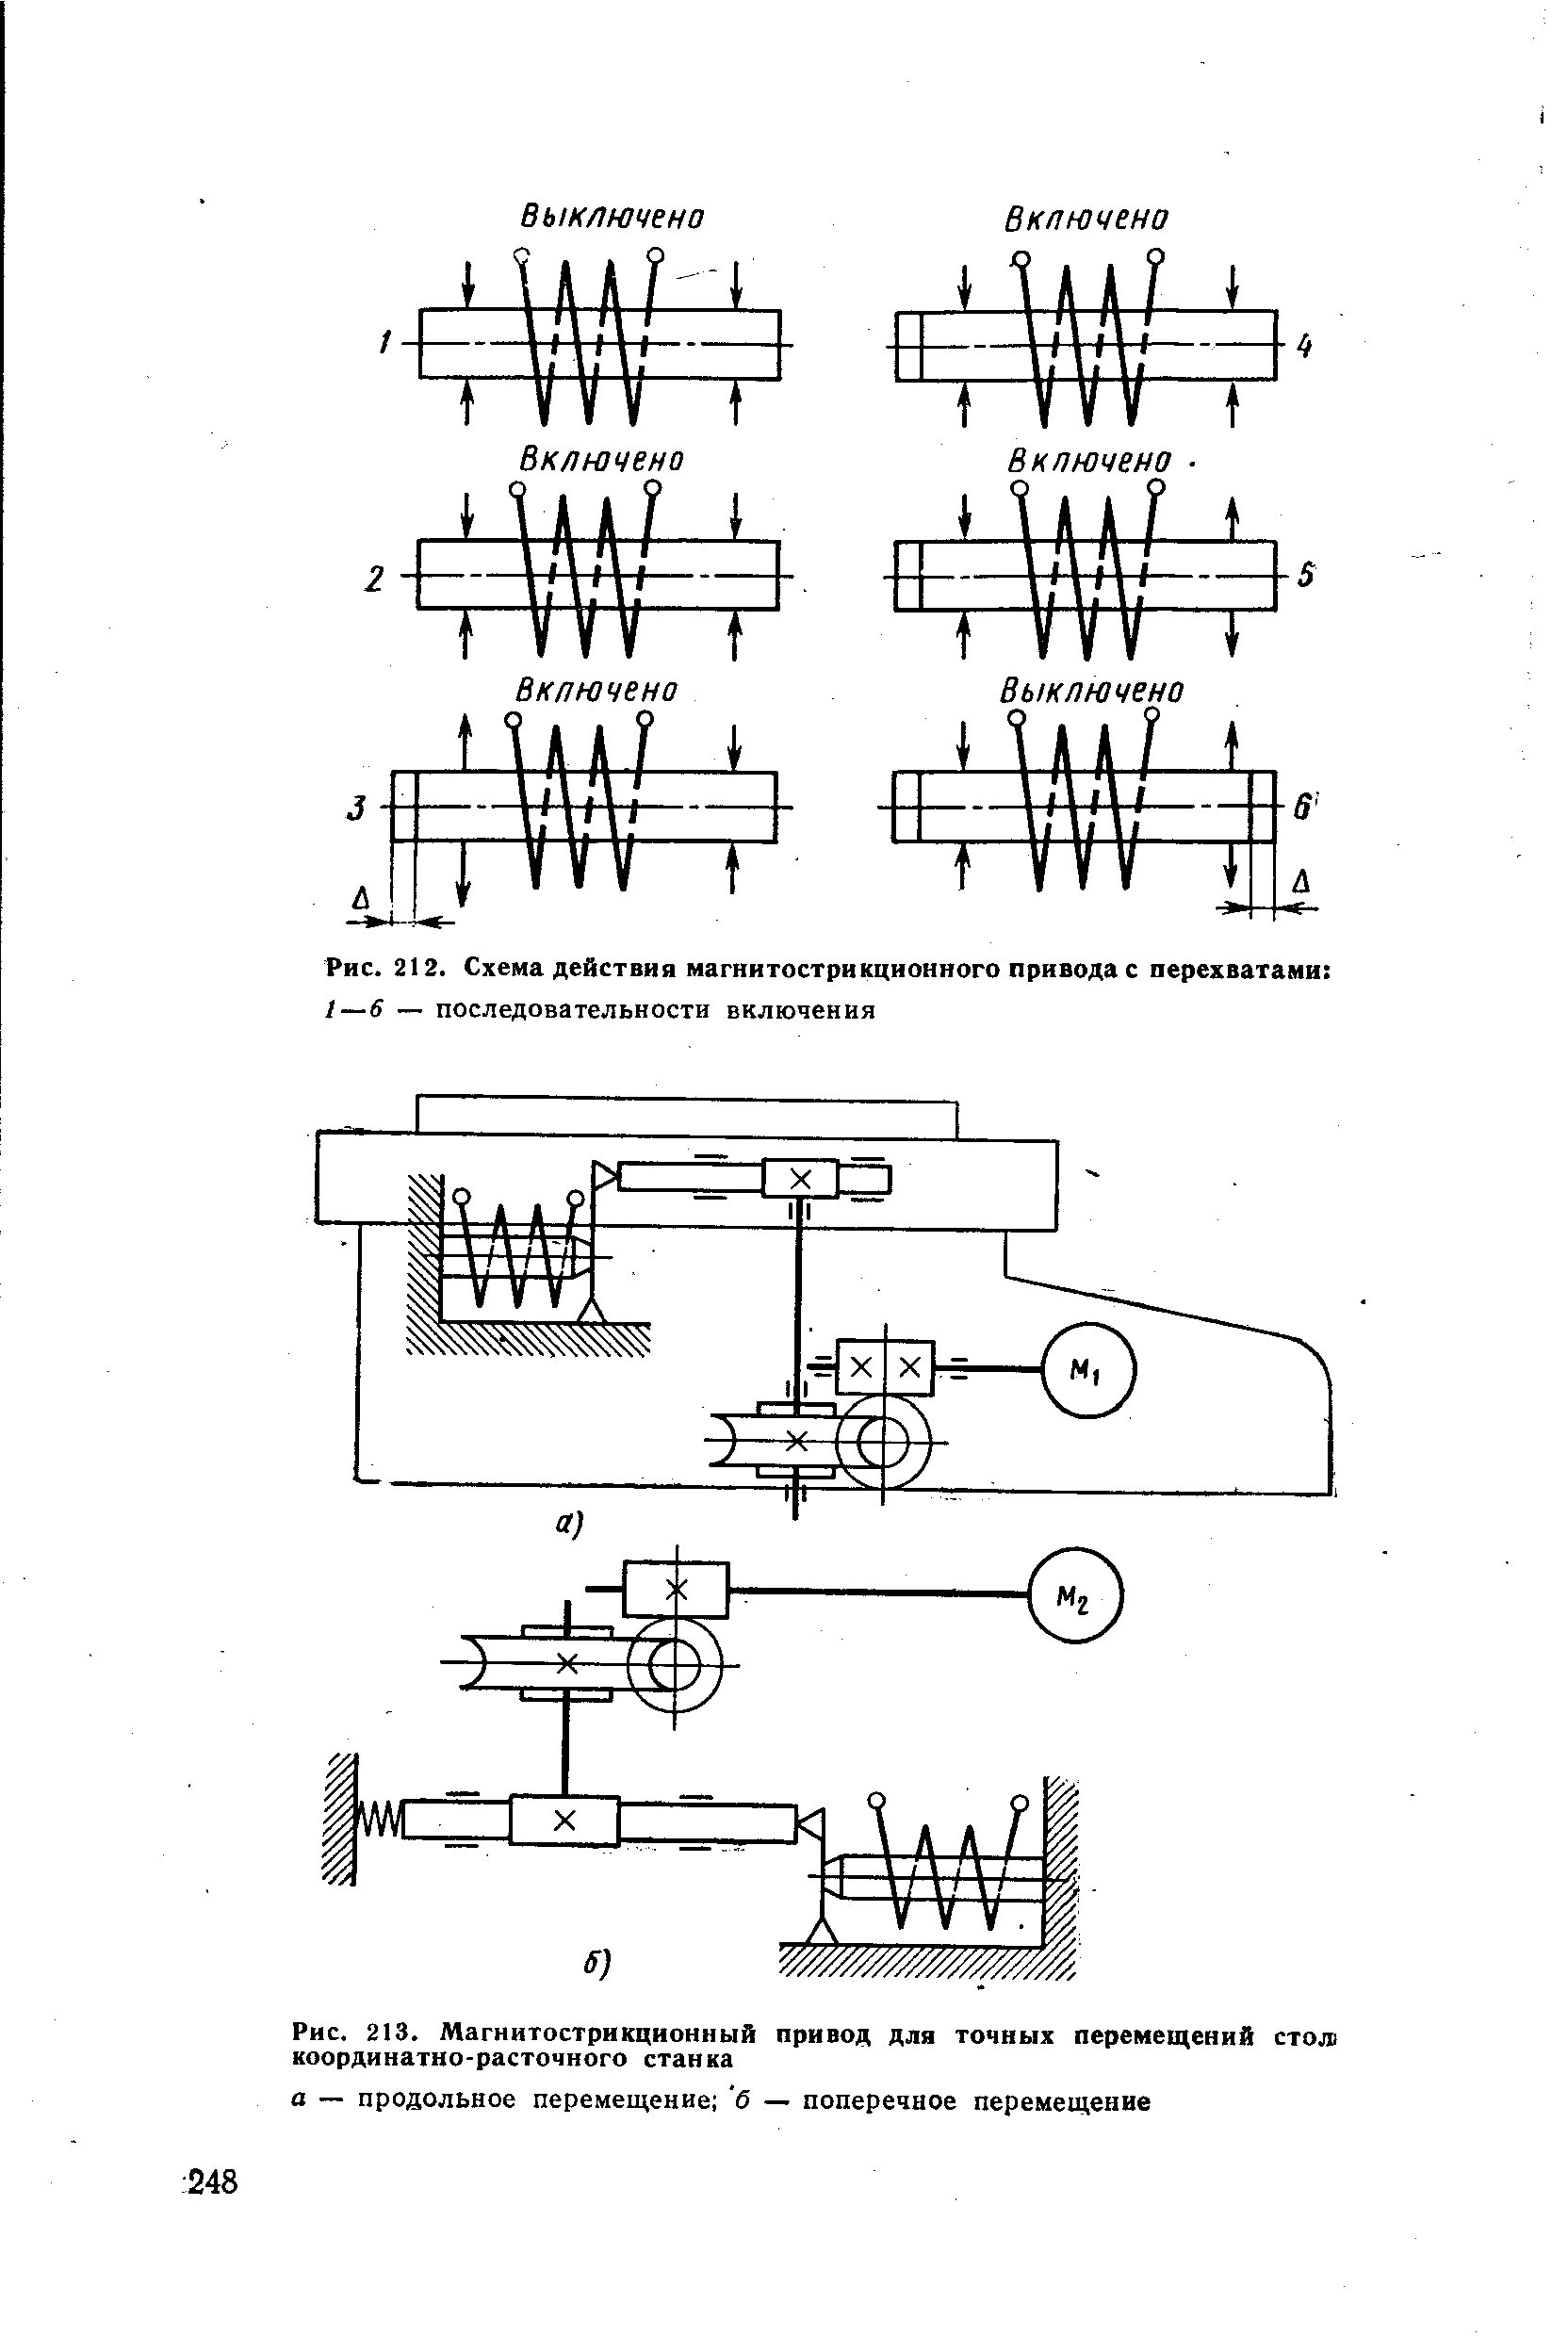 Рис. 213. Магнитострикционный привод для точных перемещений стол координатно-расточного станка
